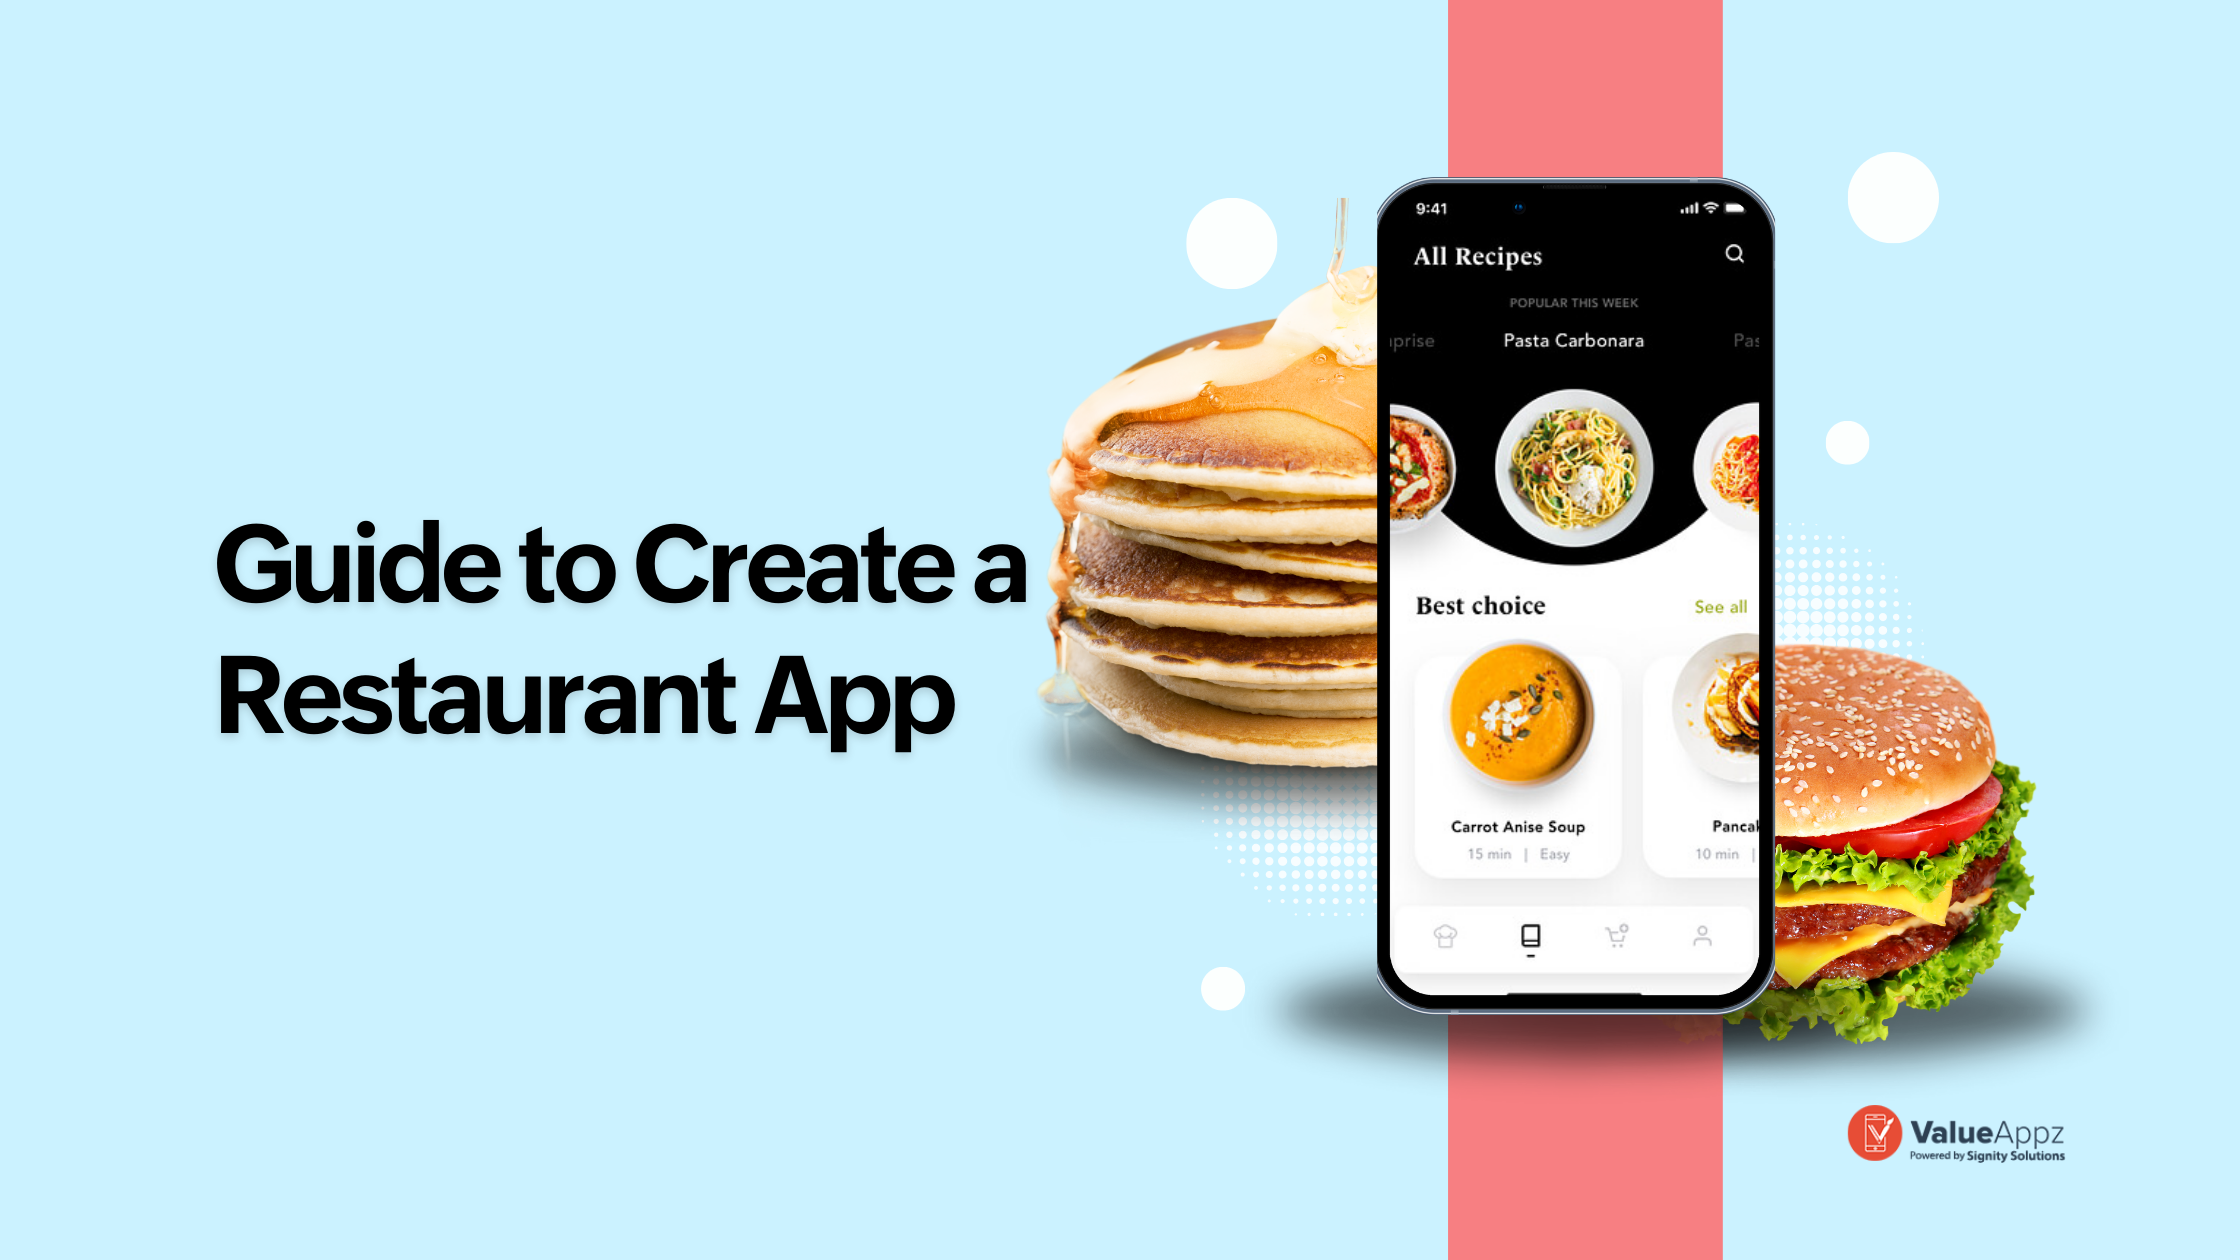 create a restaurant app